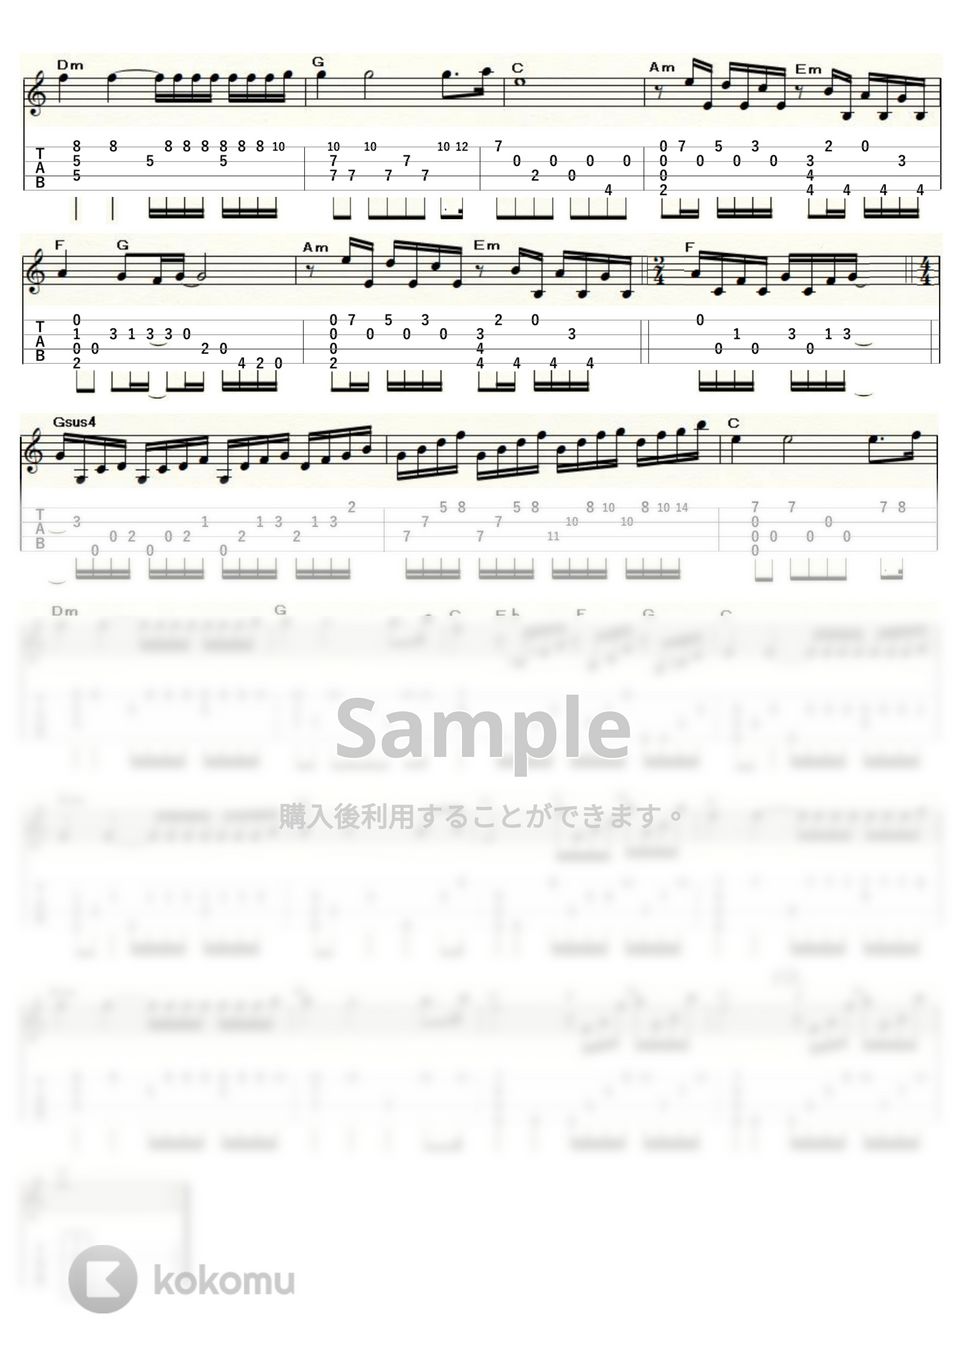 リチャード・クレイダーマン - 渚のアデリーヌ (ｳｸﾚﾚｿﾛ / Low-G / 上級) by ukulelepapa